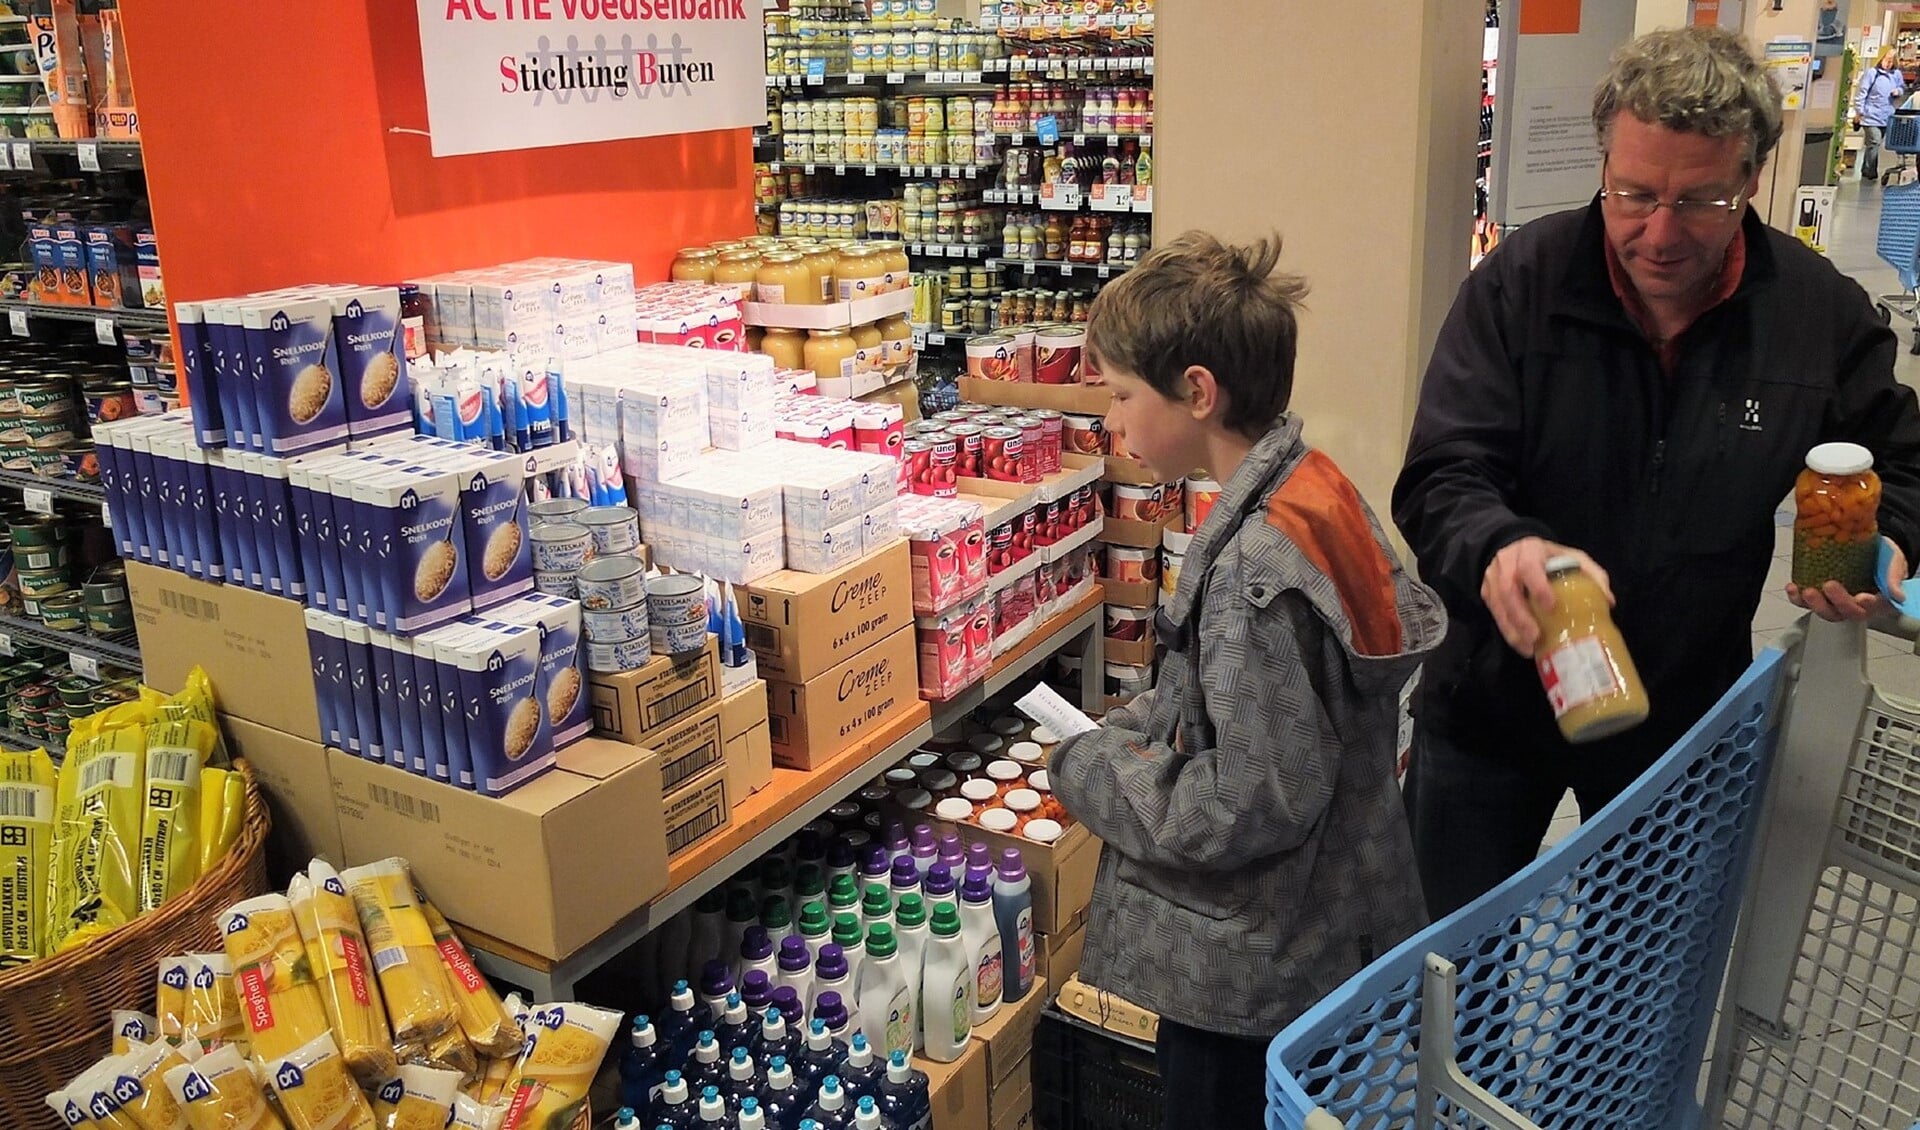 In de winkels zijn aparte stands waar producten voor de voedselbank staan, die men kan doneren (archieffoto pr).